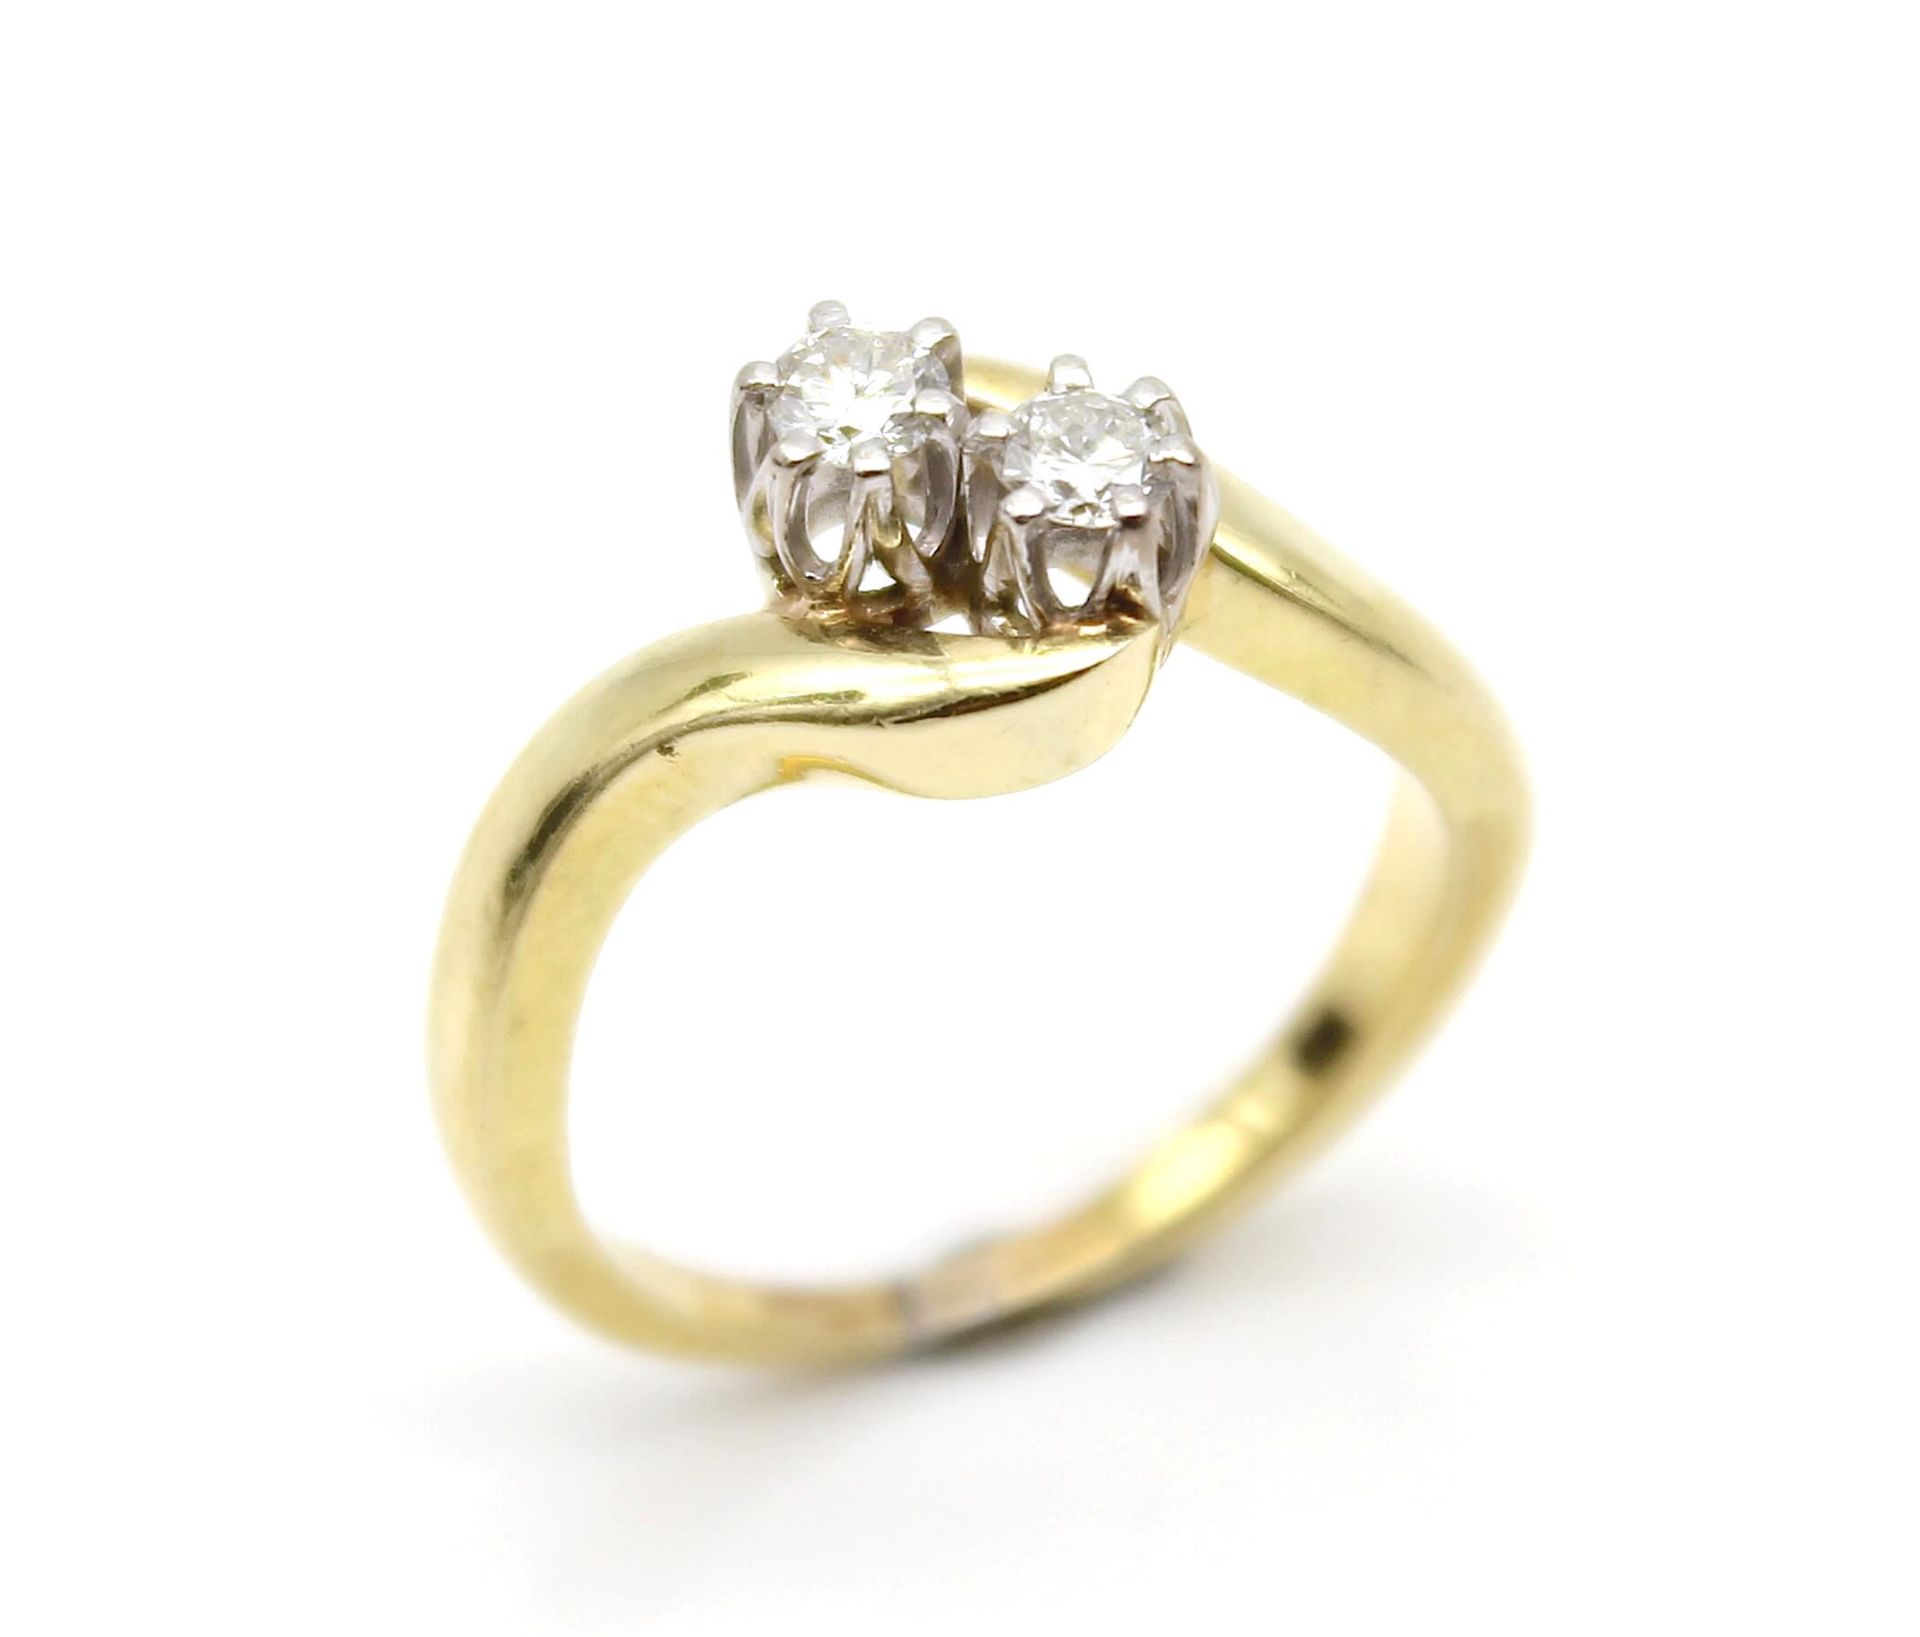 Ring aus 585er Gold mit 2 Brillanten, gesamt ca. 0,25 ct mit einer hohen Reinheit und mittlerem